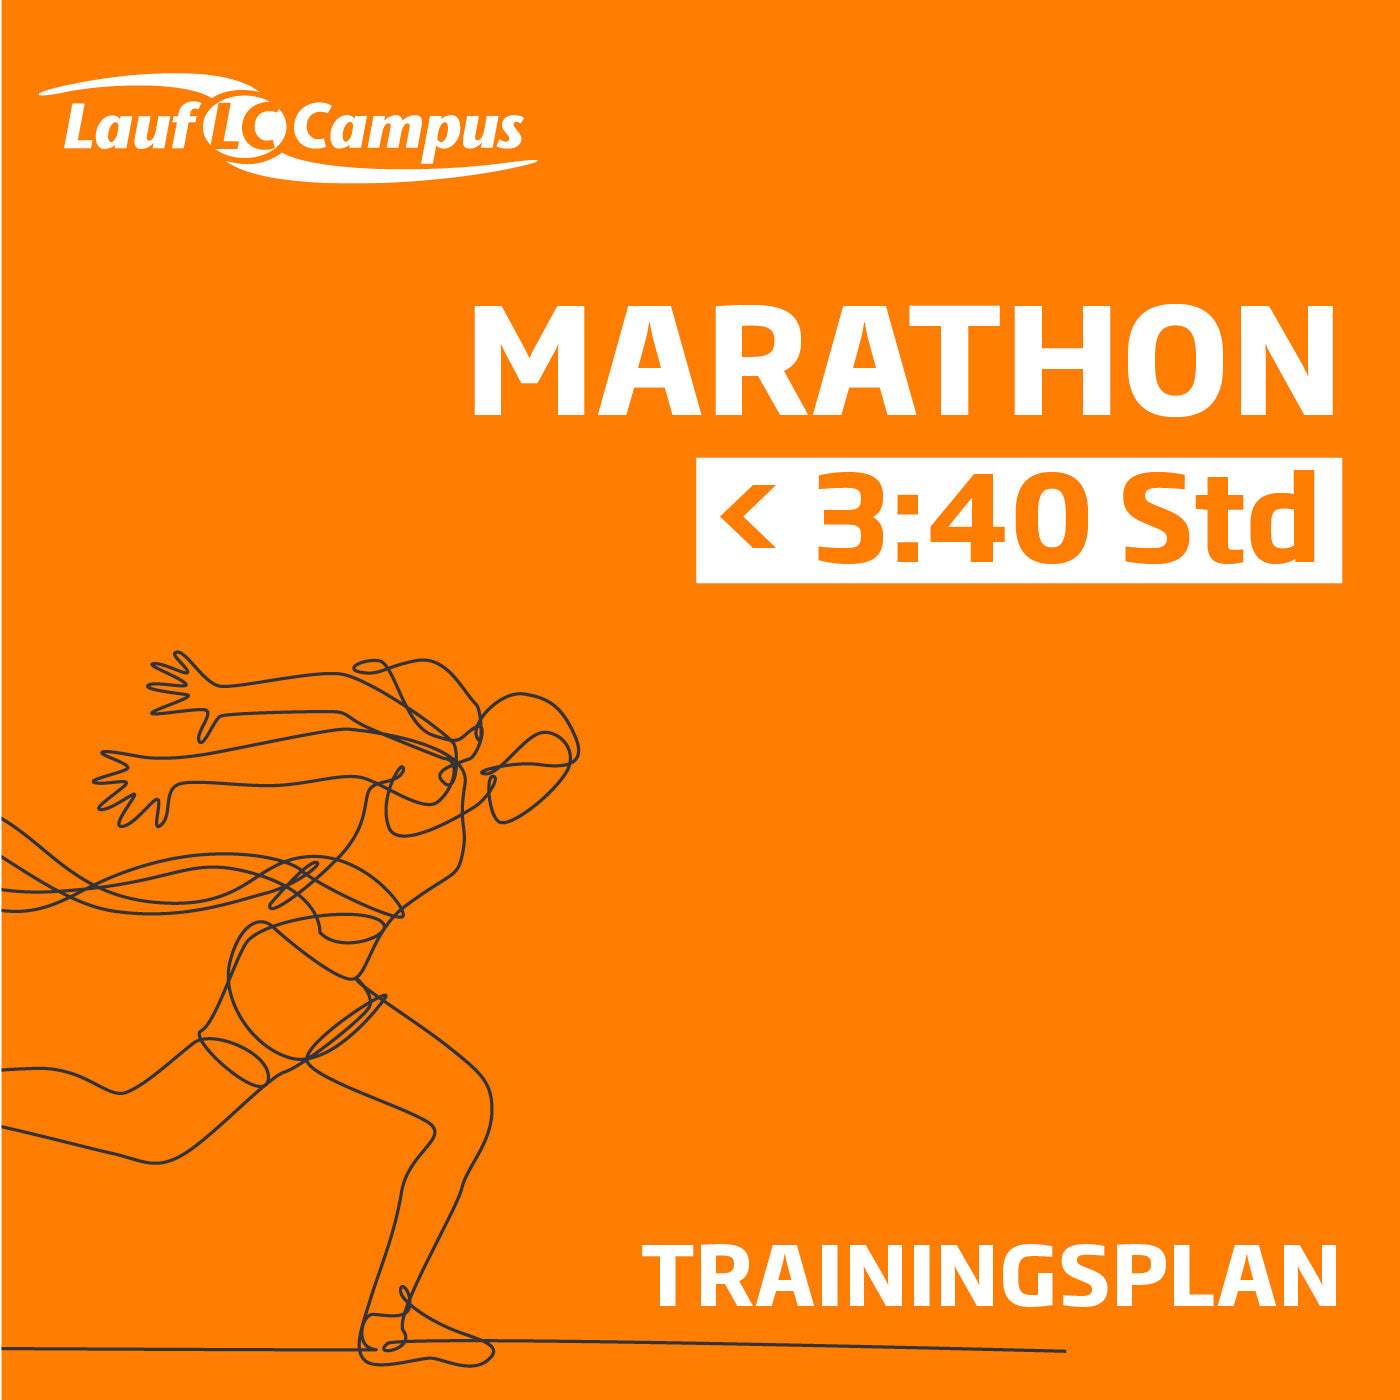 Trainingsplan für Marathon unter 3:40 Stunden